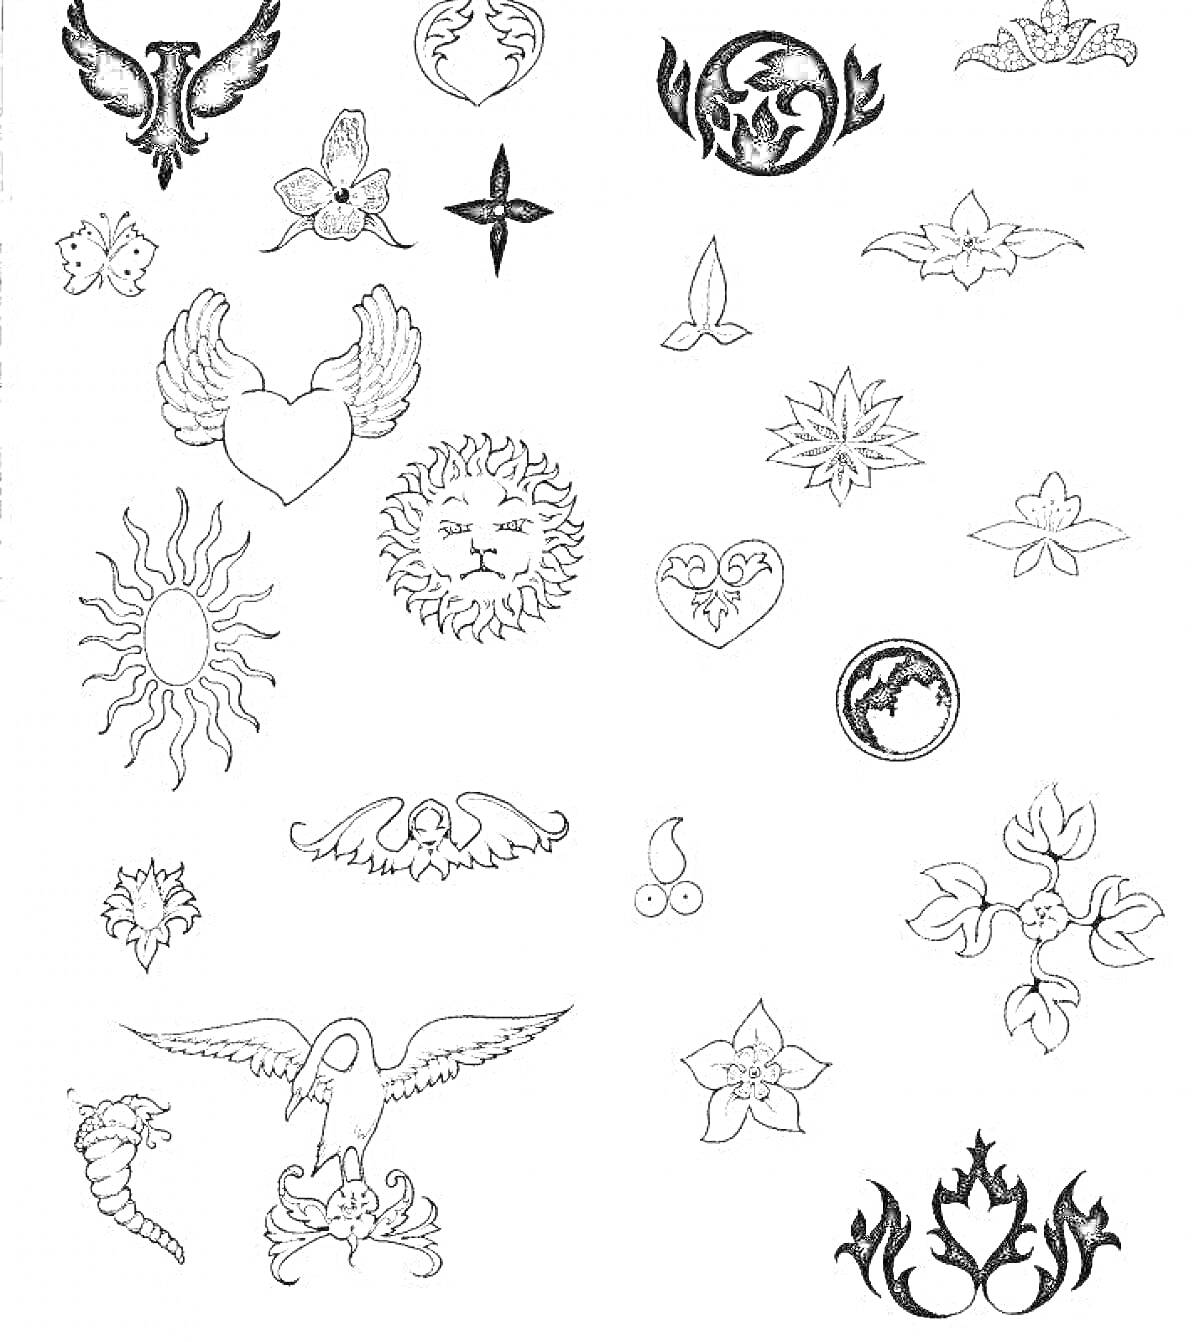 Раскраска Мини татуировки с изображениями птиц, сердец, крыльев, цветов, орнаментов и символов